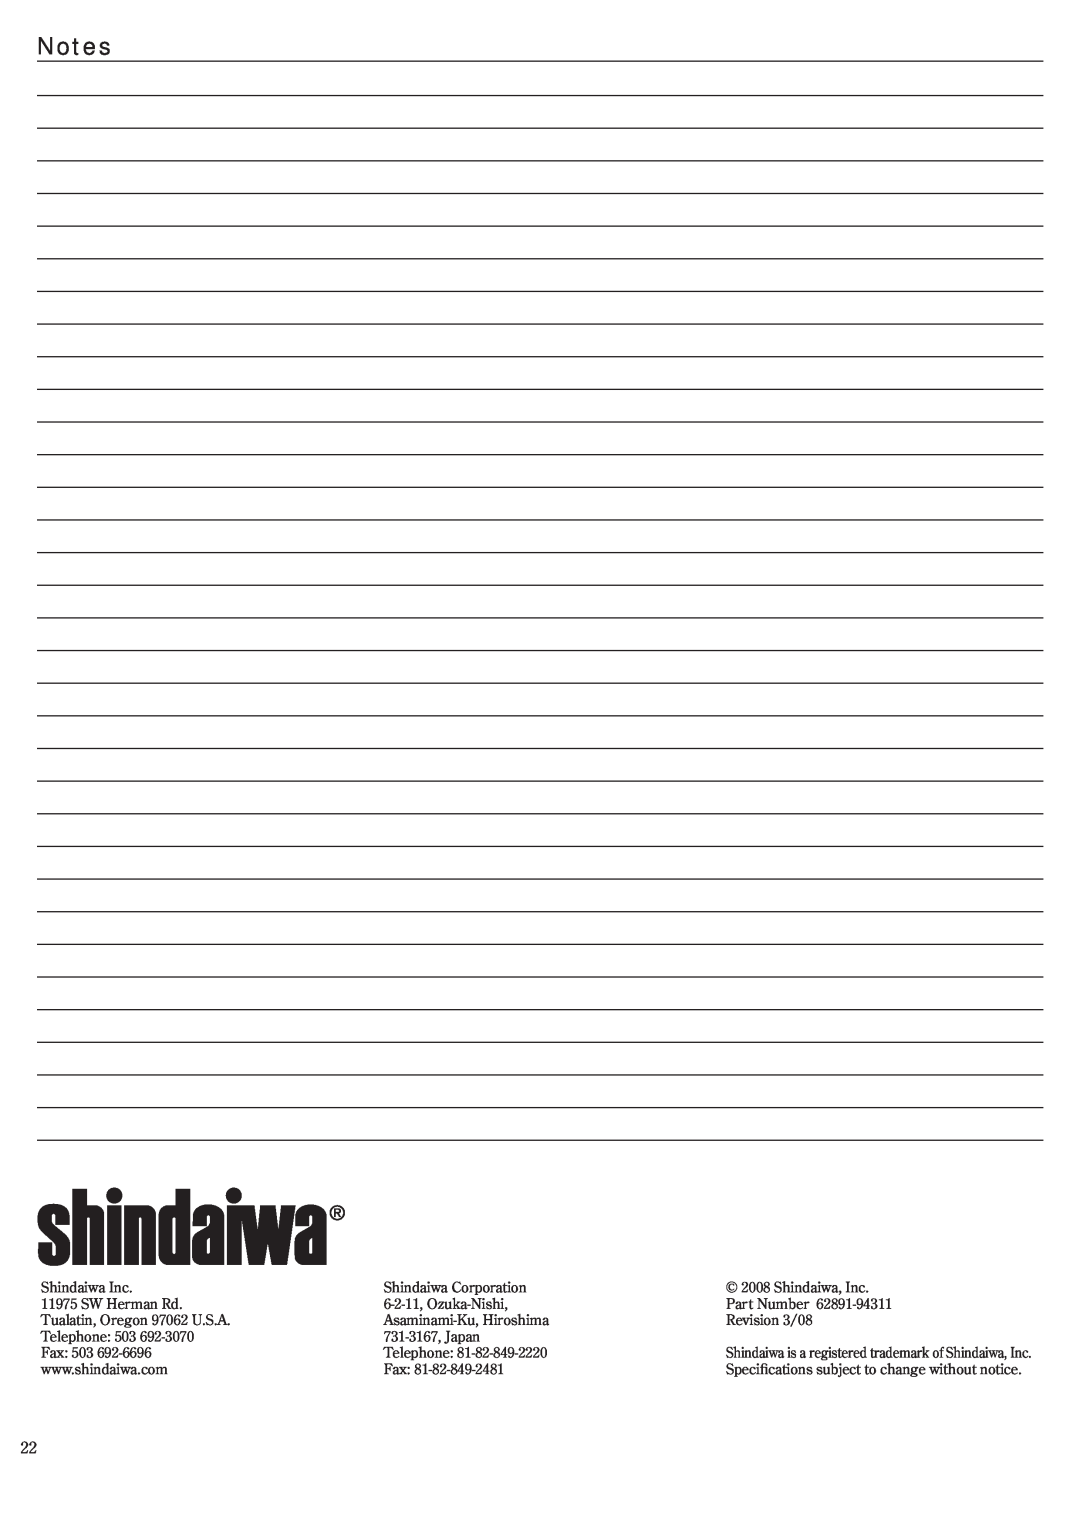 Shindaiwa 62891-94311 manual Shindaiwa Inc 